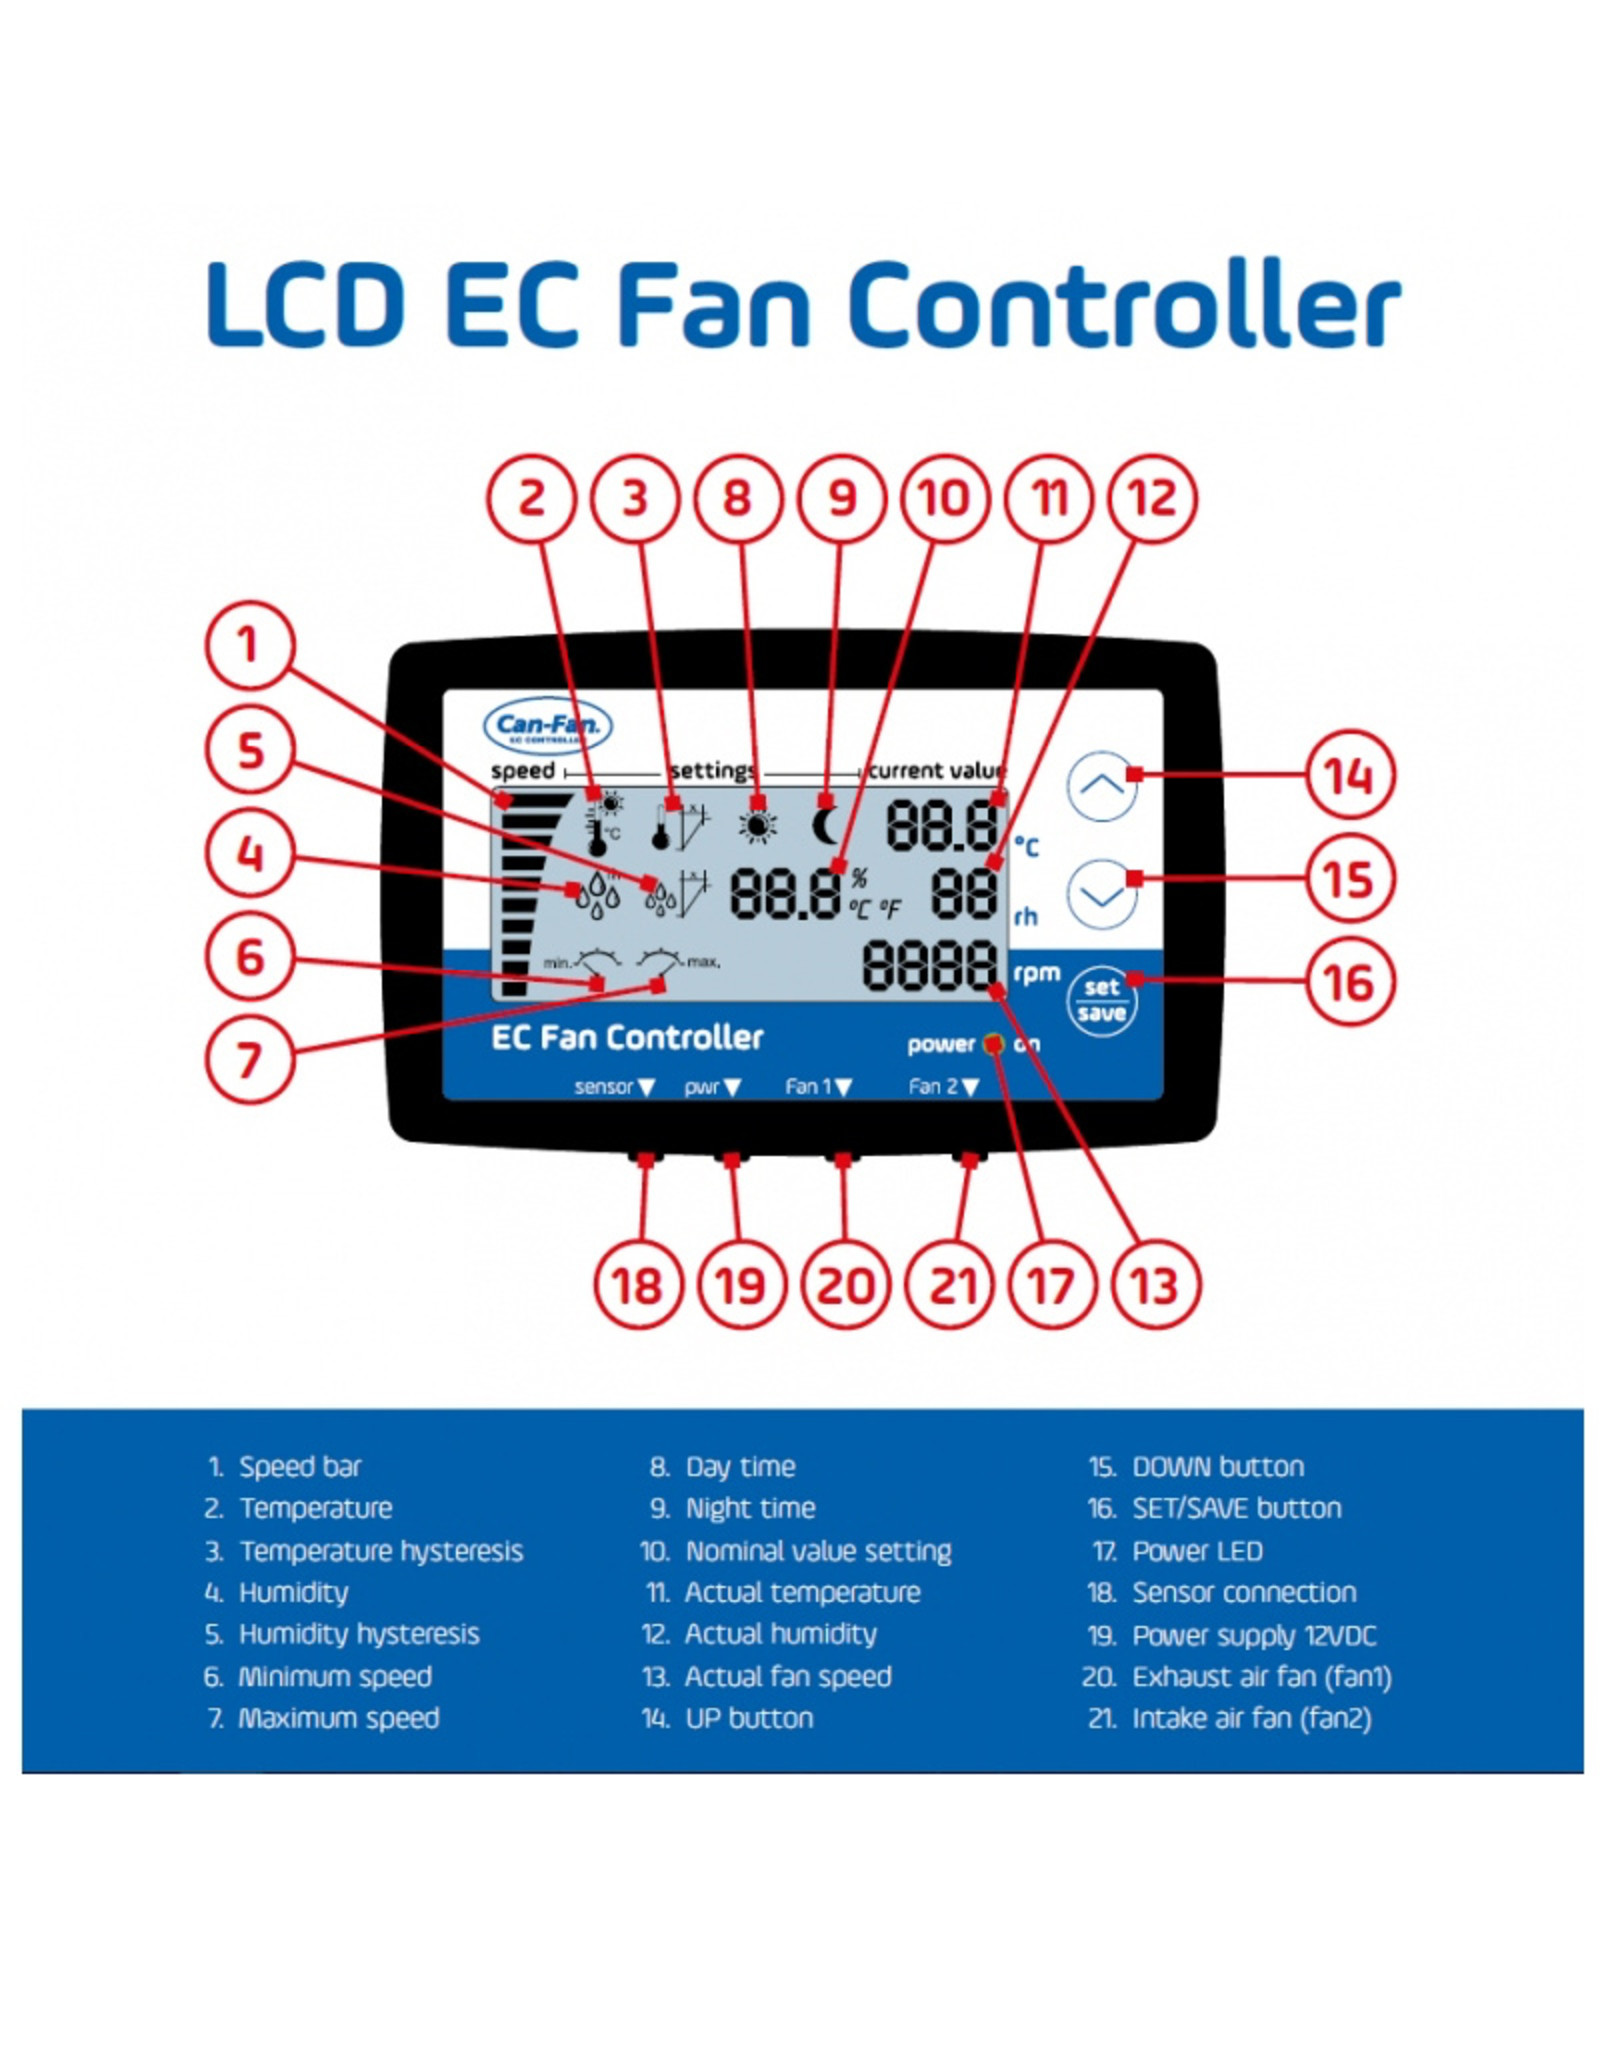 Can LCD EC Fan Controller